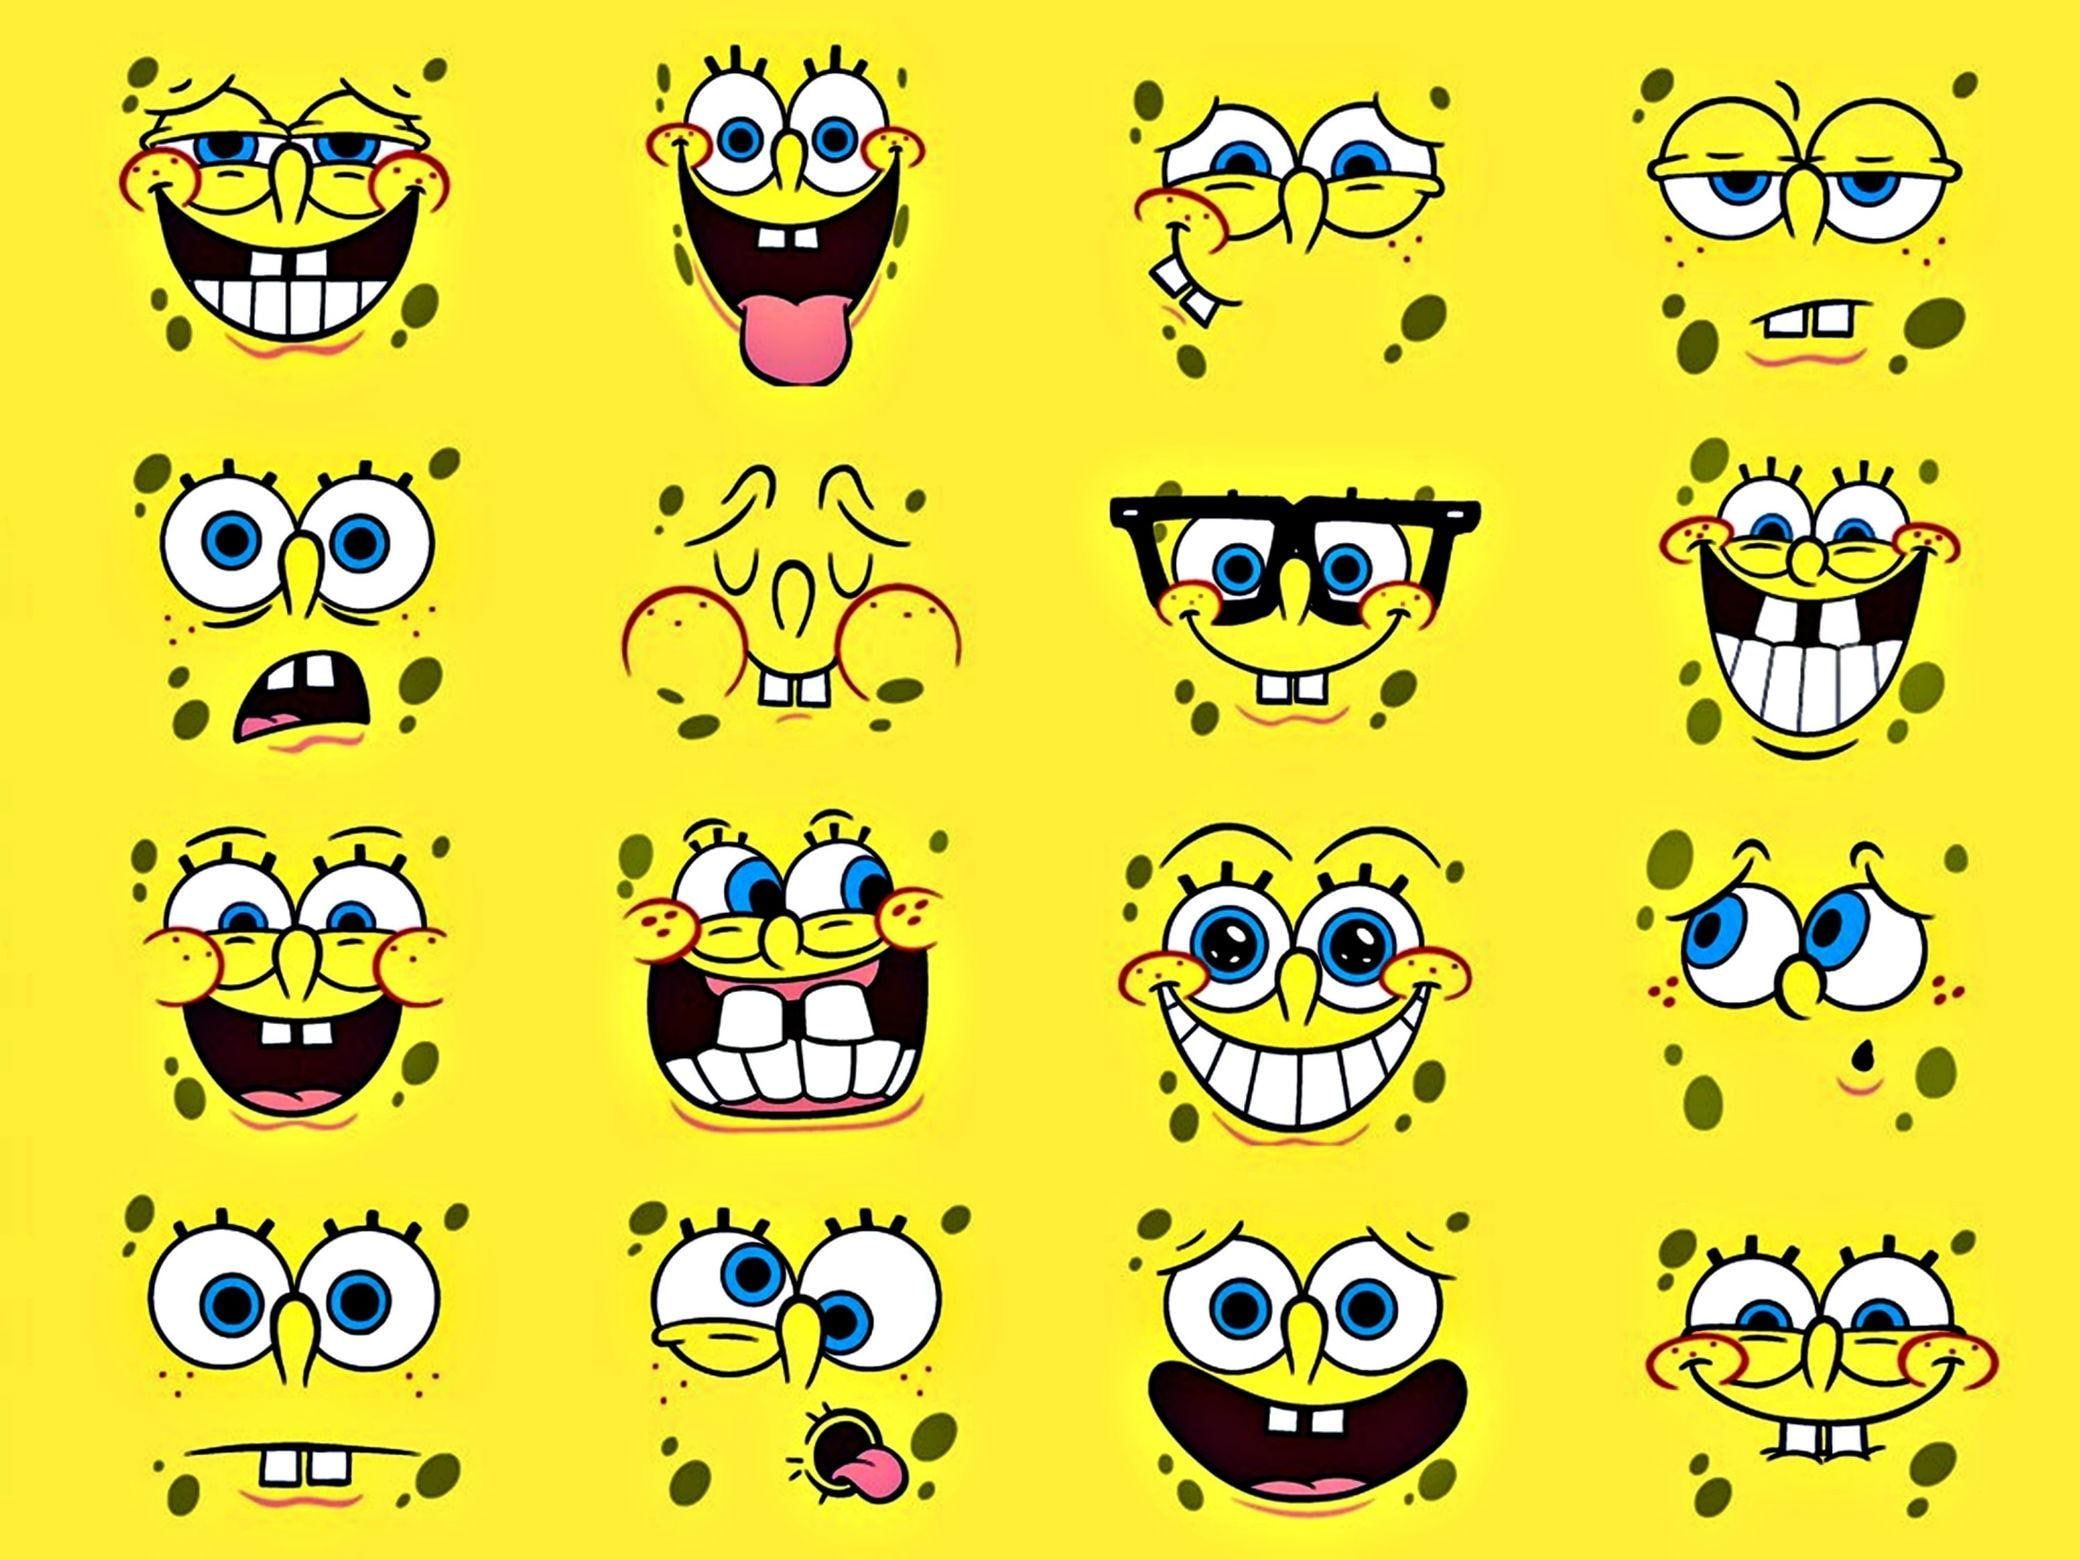 Spongebob #spong #series 3D and abstract P #wallpaper #hdwallpaper #desktop. Spongebob wallpaper, Spongebob, Spongebob faces